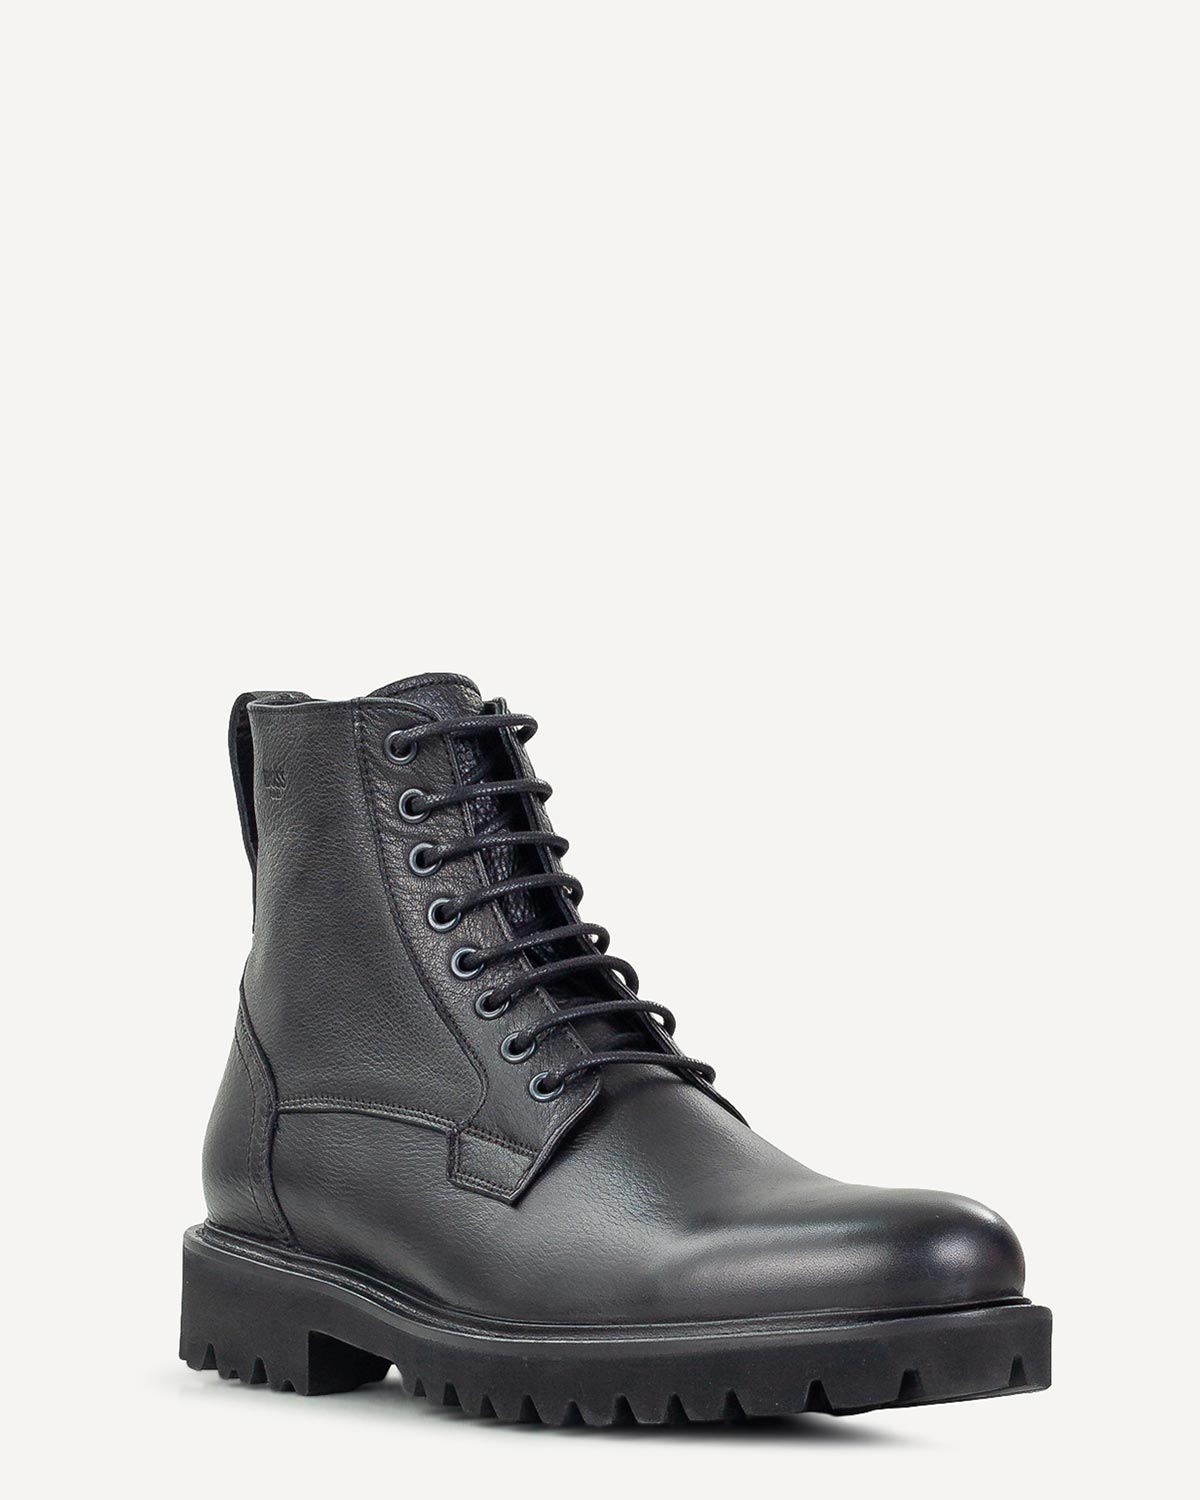 Άνδρας - Μπότες - Μποτάκια - Boss Shoes Μαύρο